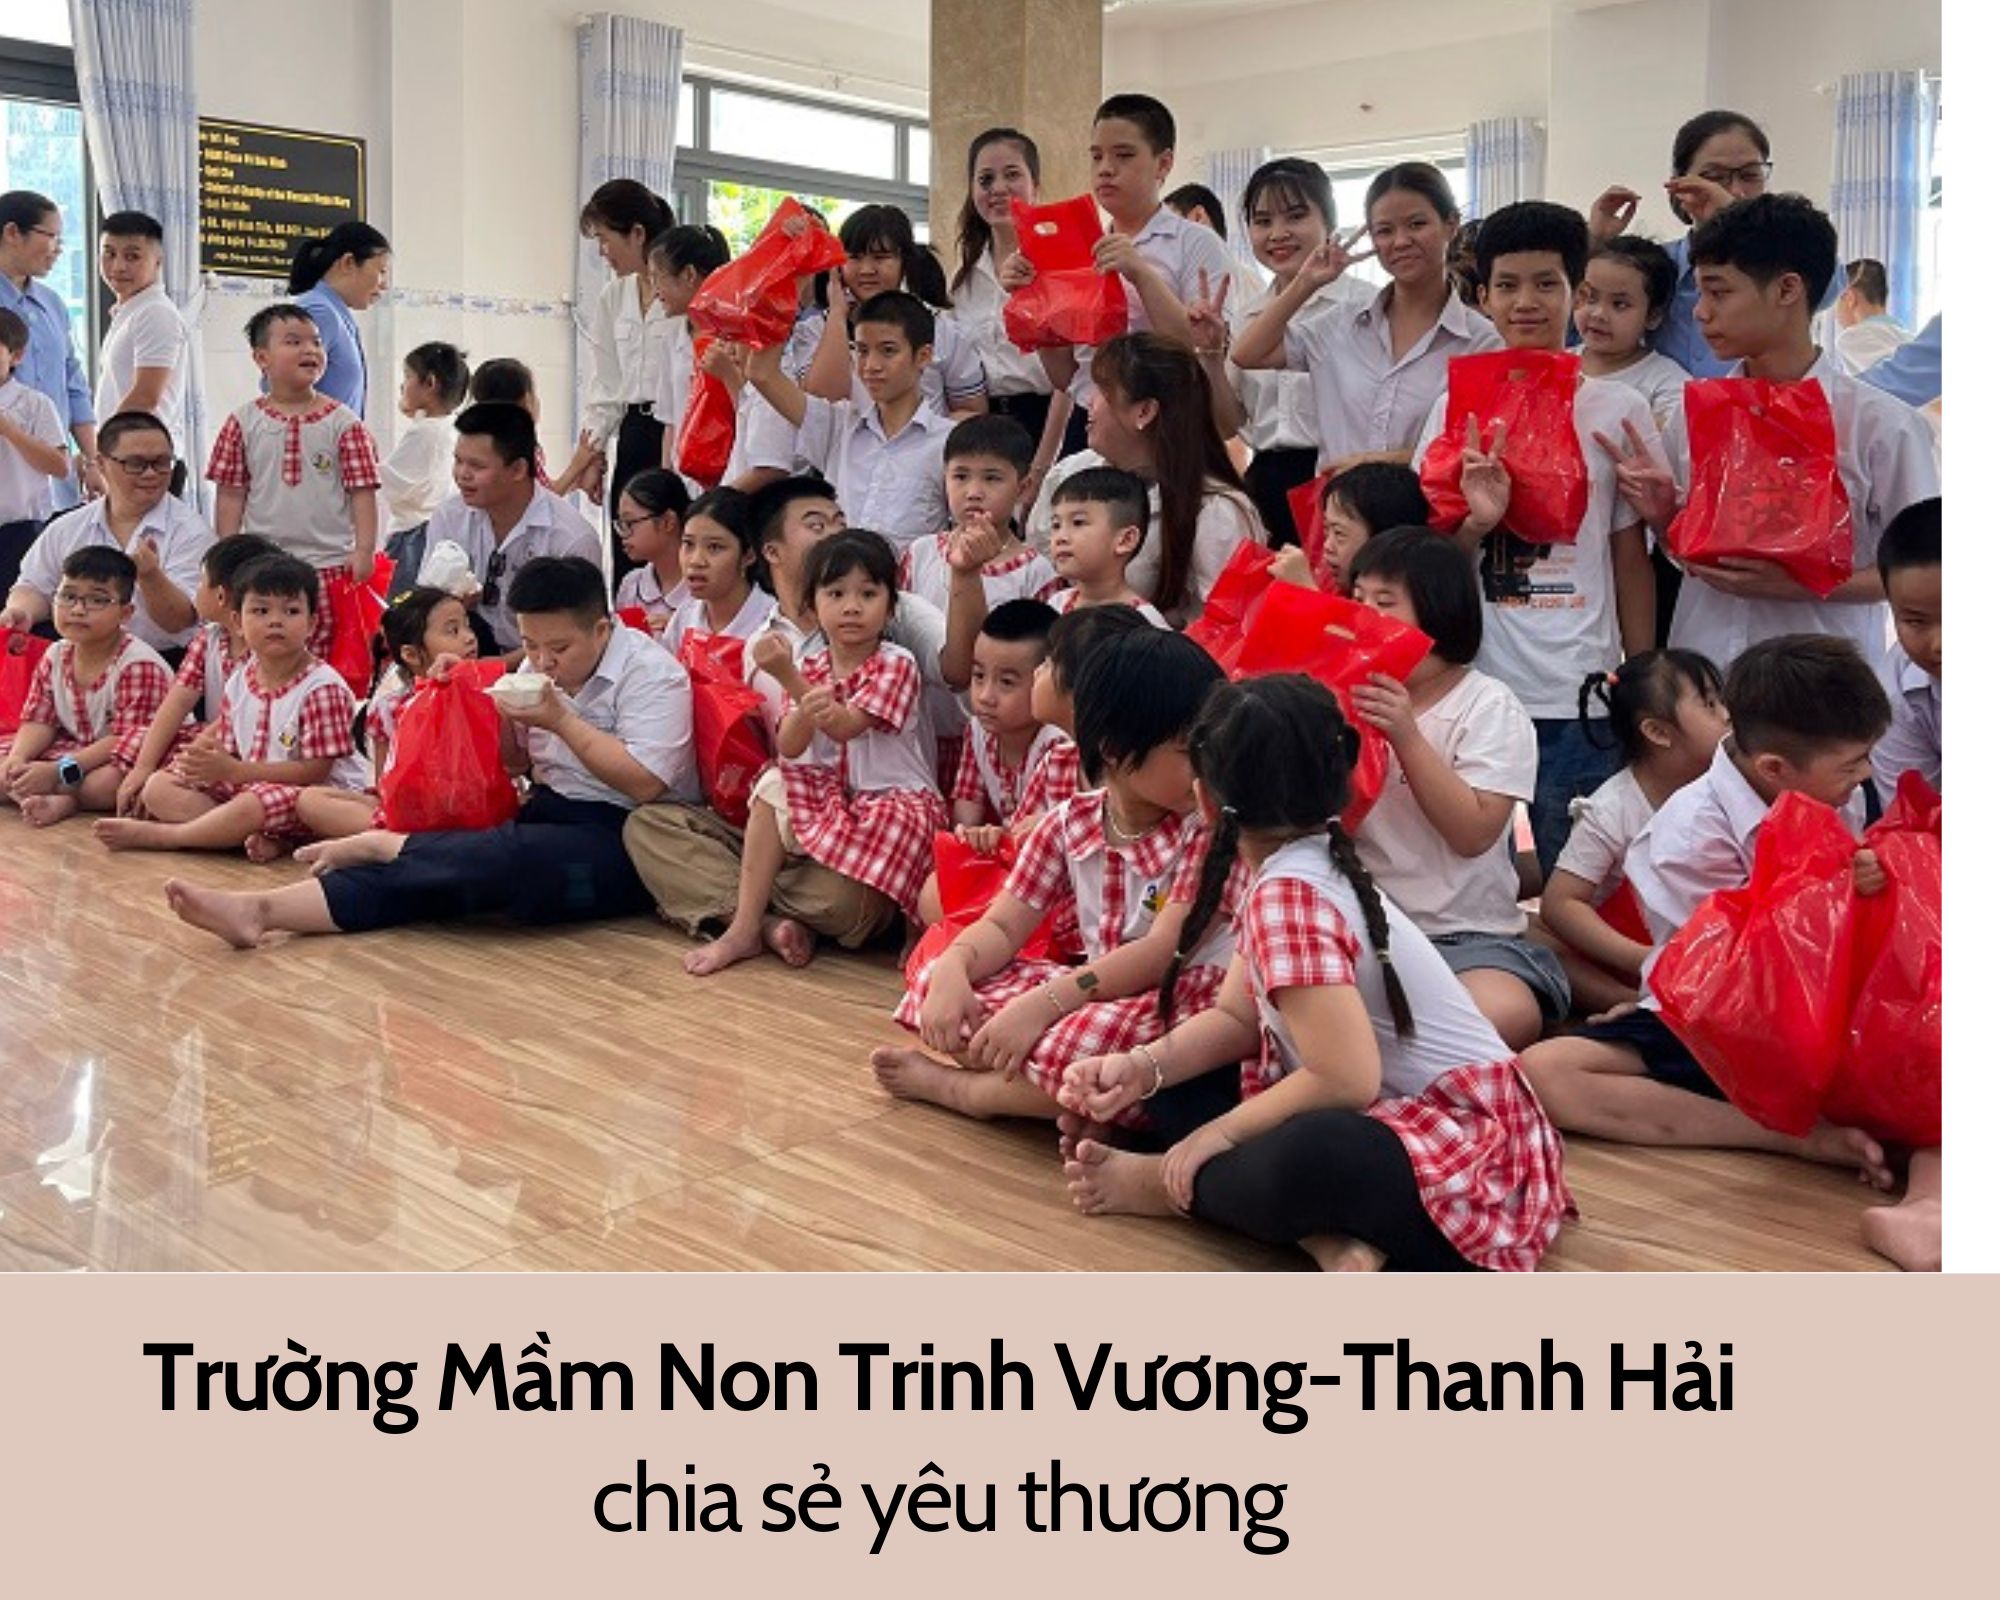 Trường mầm non Trinh Vương – Thanh Hải chia sẻ yêu thương